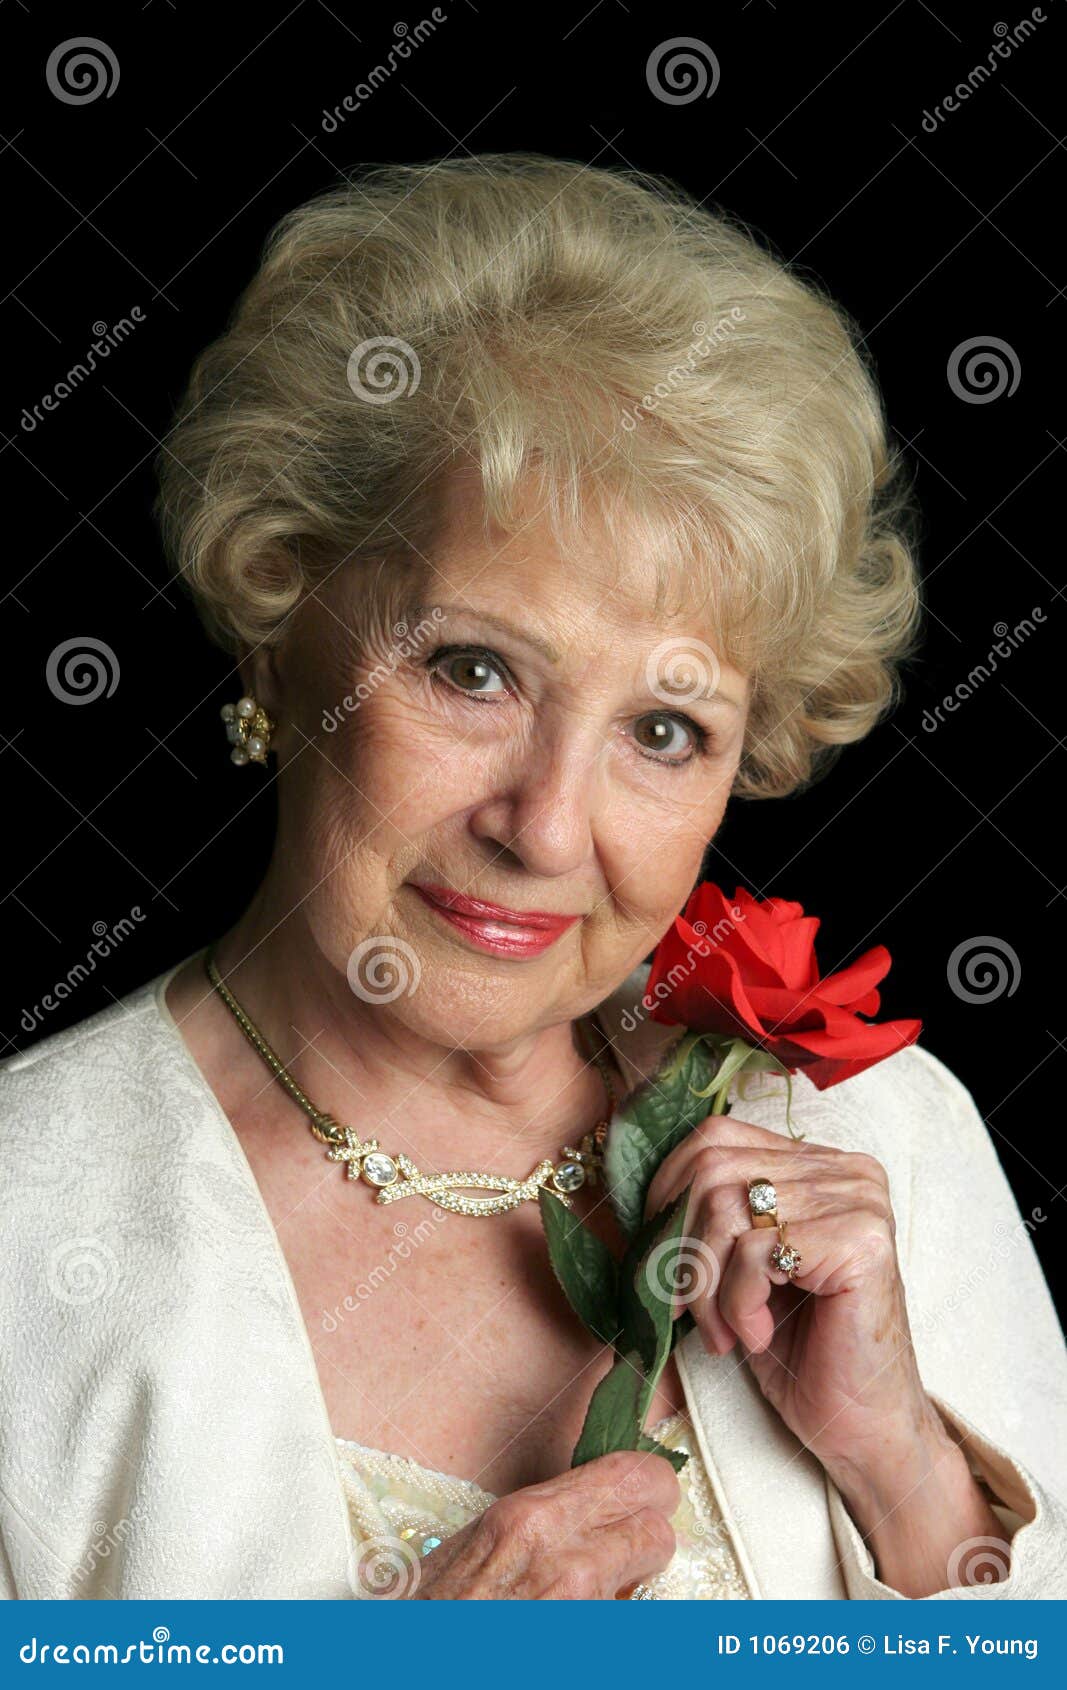 Смотреть фото пожилых красивых женщин бесплатно